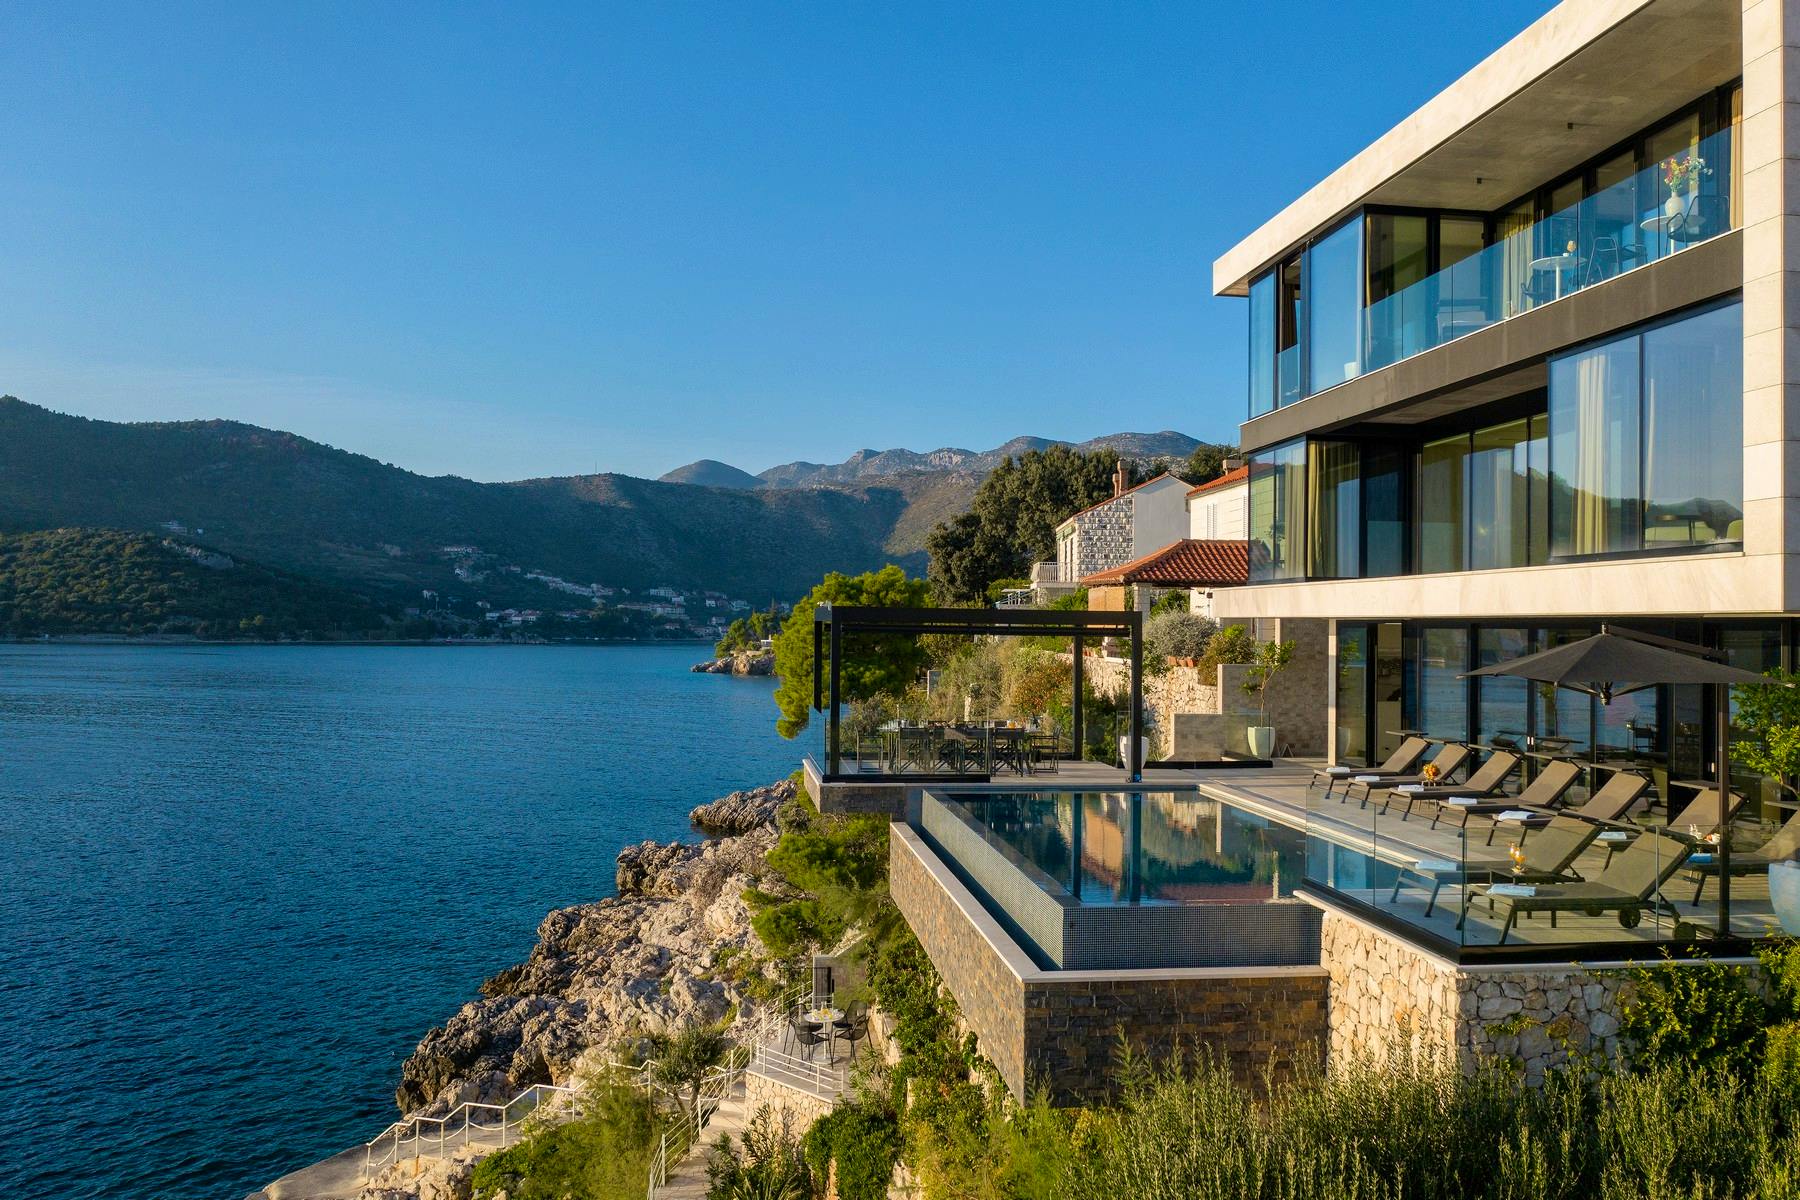 Modern villa hidden between rocky cliffs